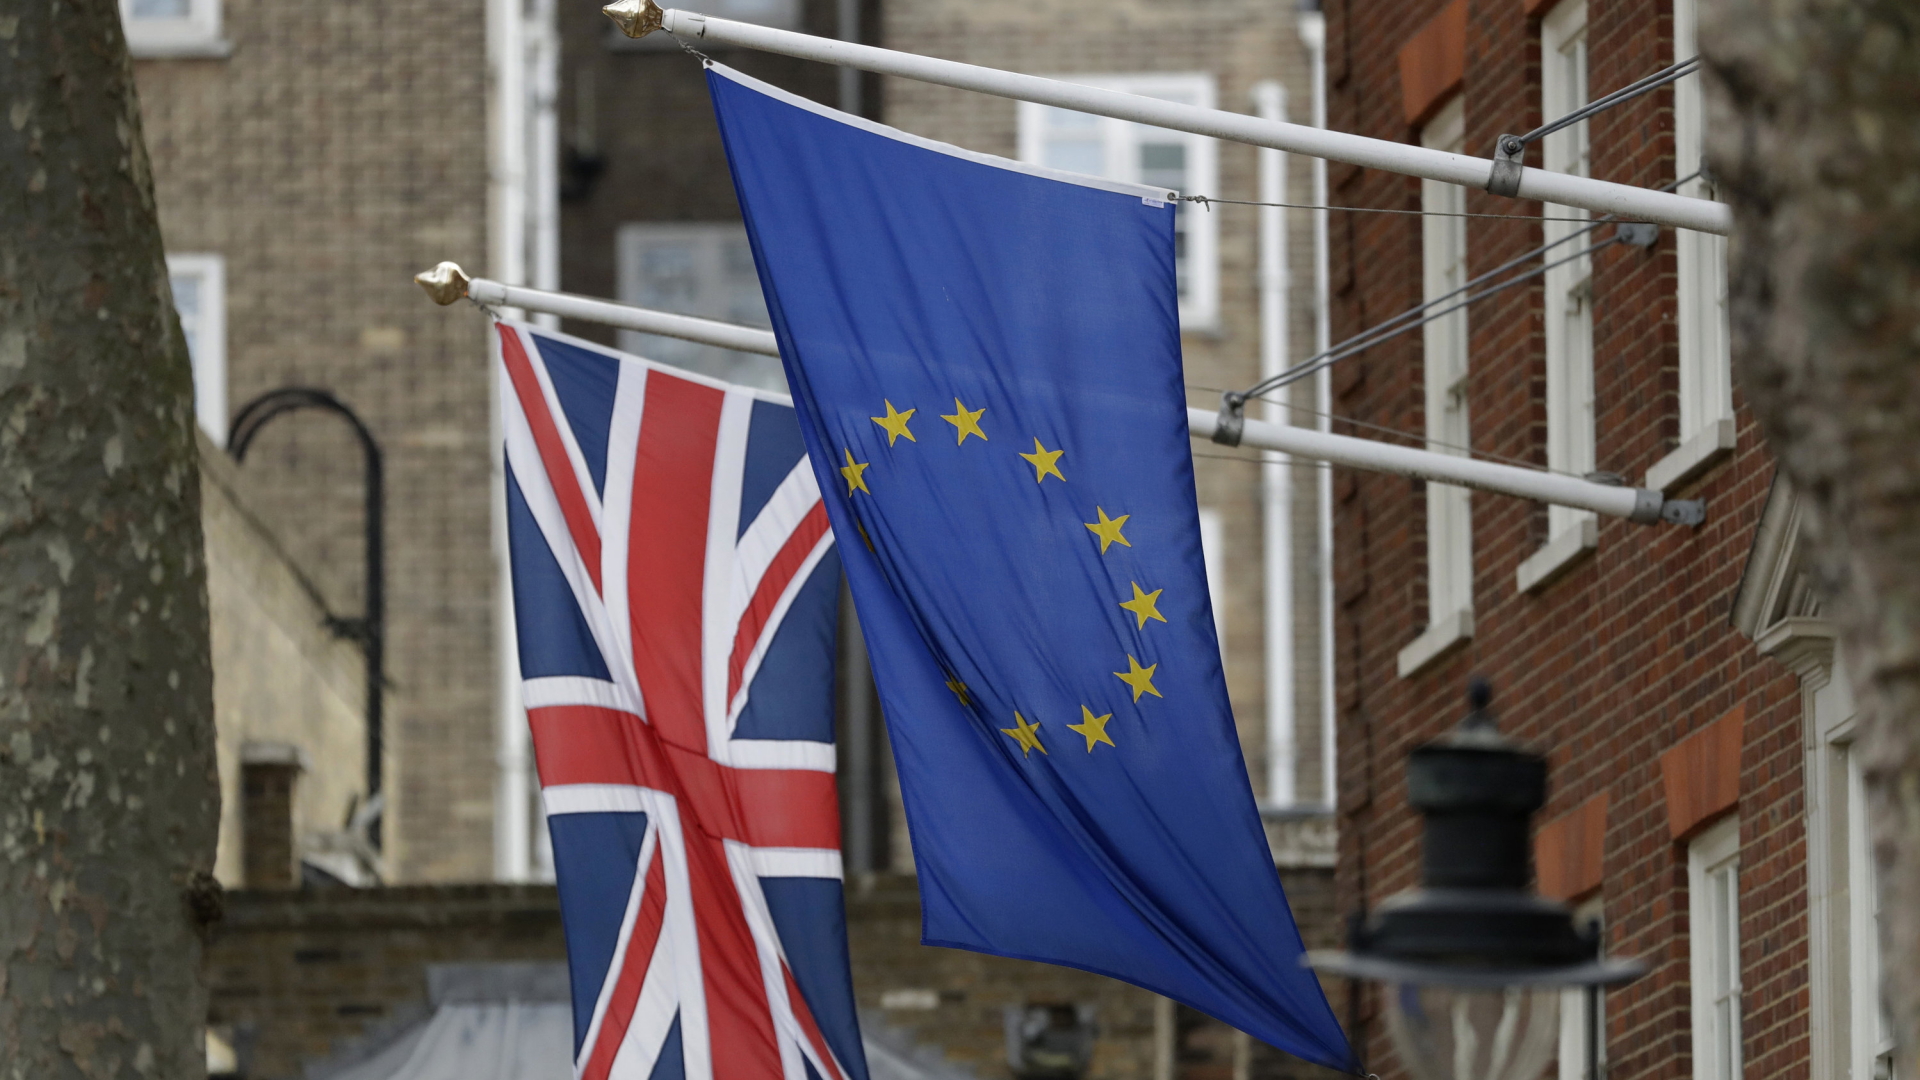 Die Flaggen des Vereinigten Königreichs und der Europäischen Union am Europa-Haus - dem Haus des Europäischen Parlamentes - in London